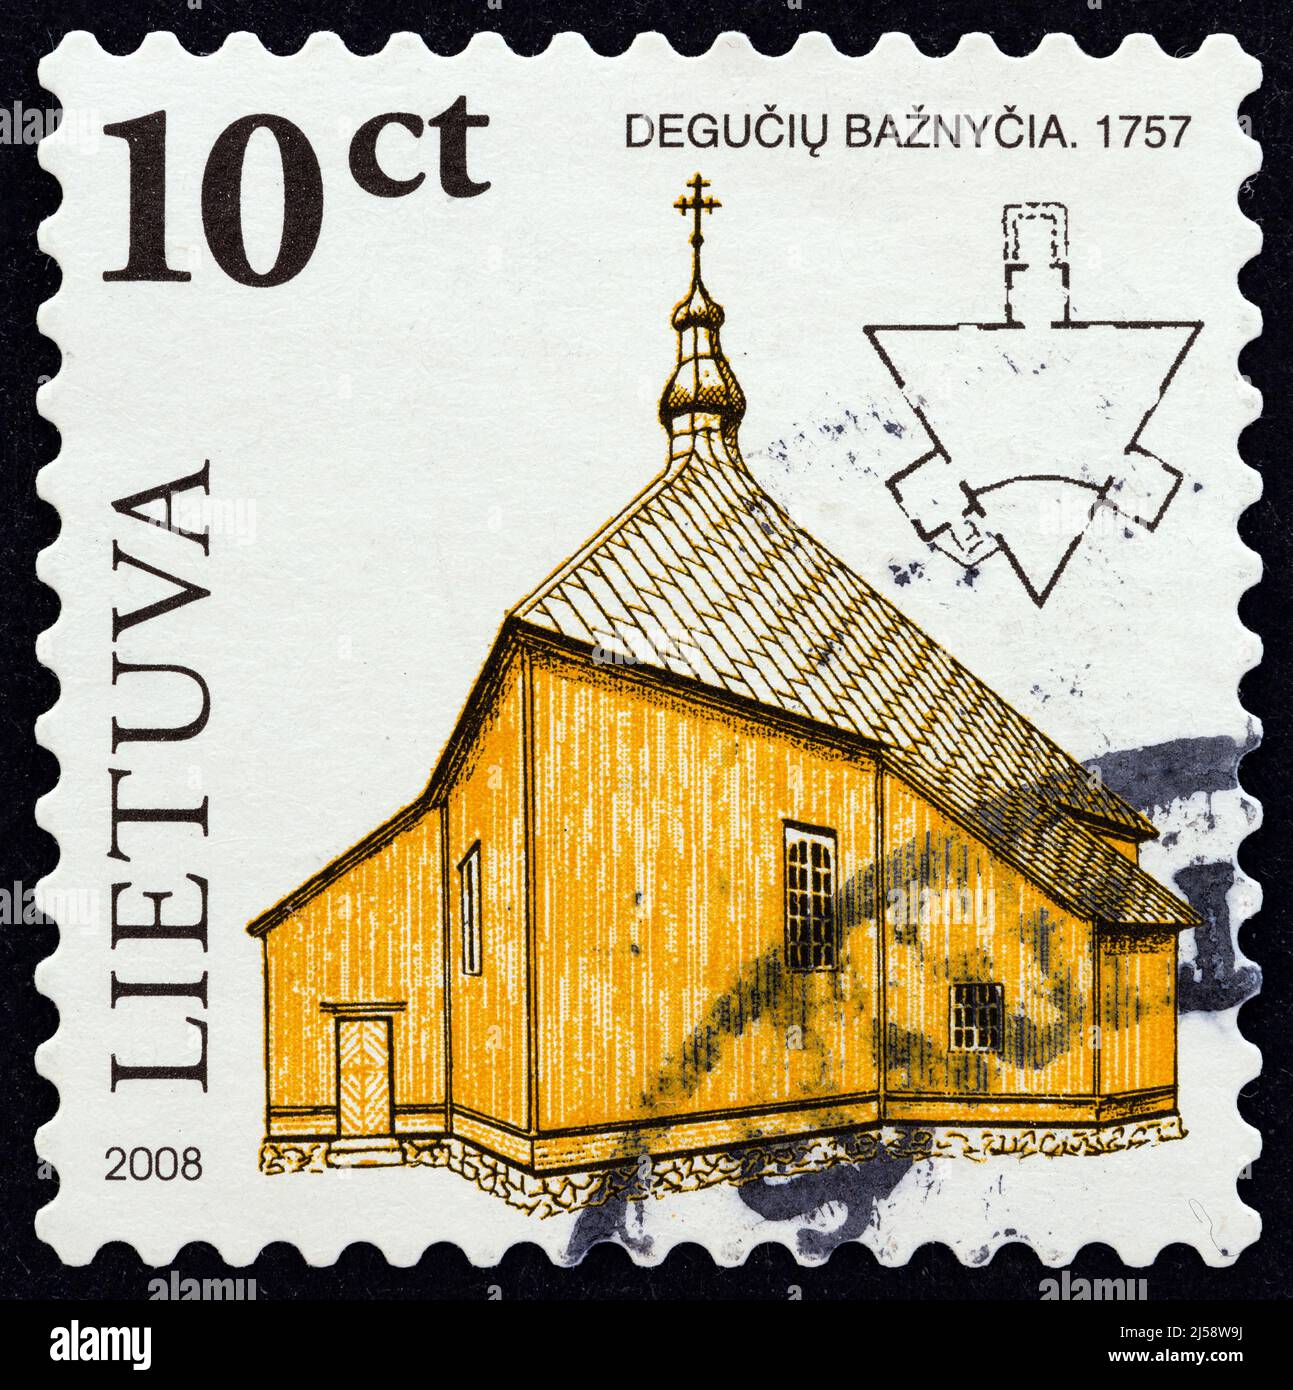 LITUANIA - CIRCA 2008: Un francobollo stampato in Lituania dal numero 'architettura sacrale in legno in Lituania' mostra la chiesa di Deguchiai, 1757. Foto Stock